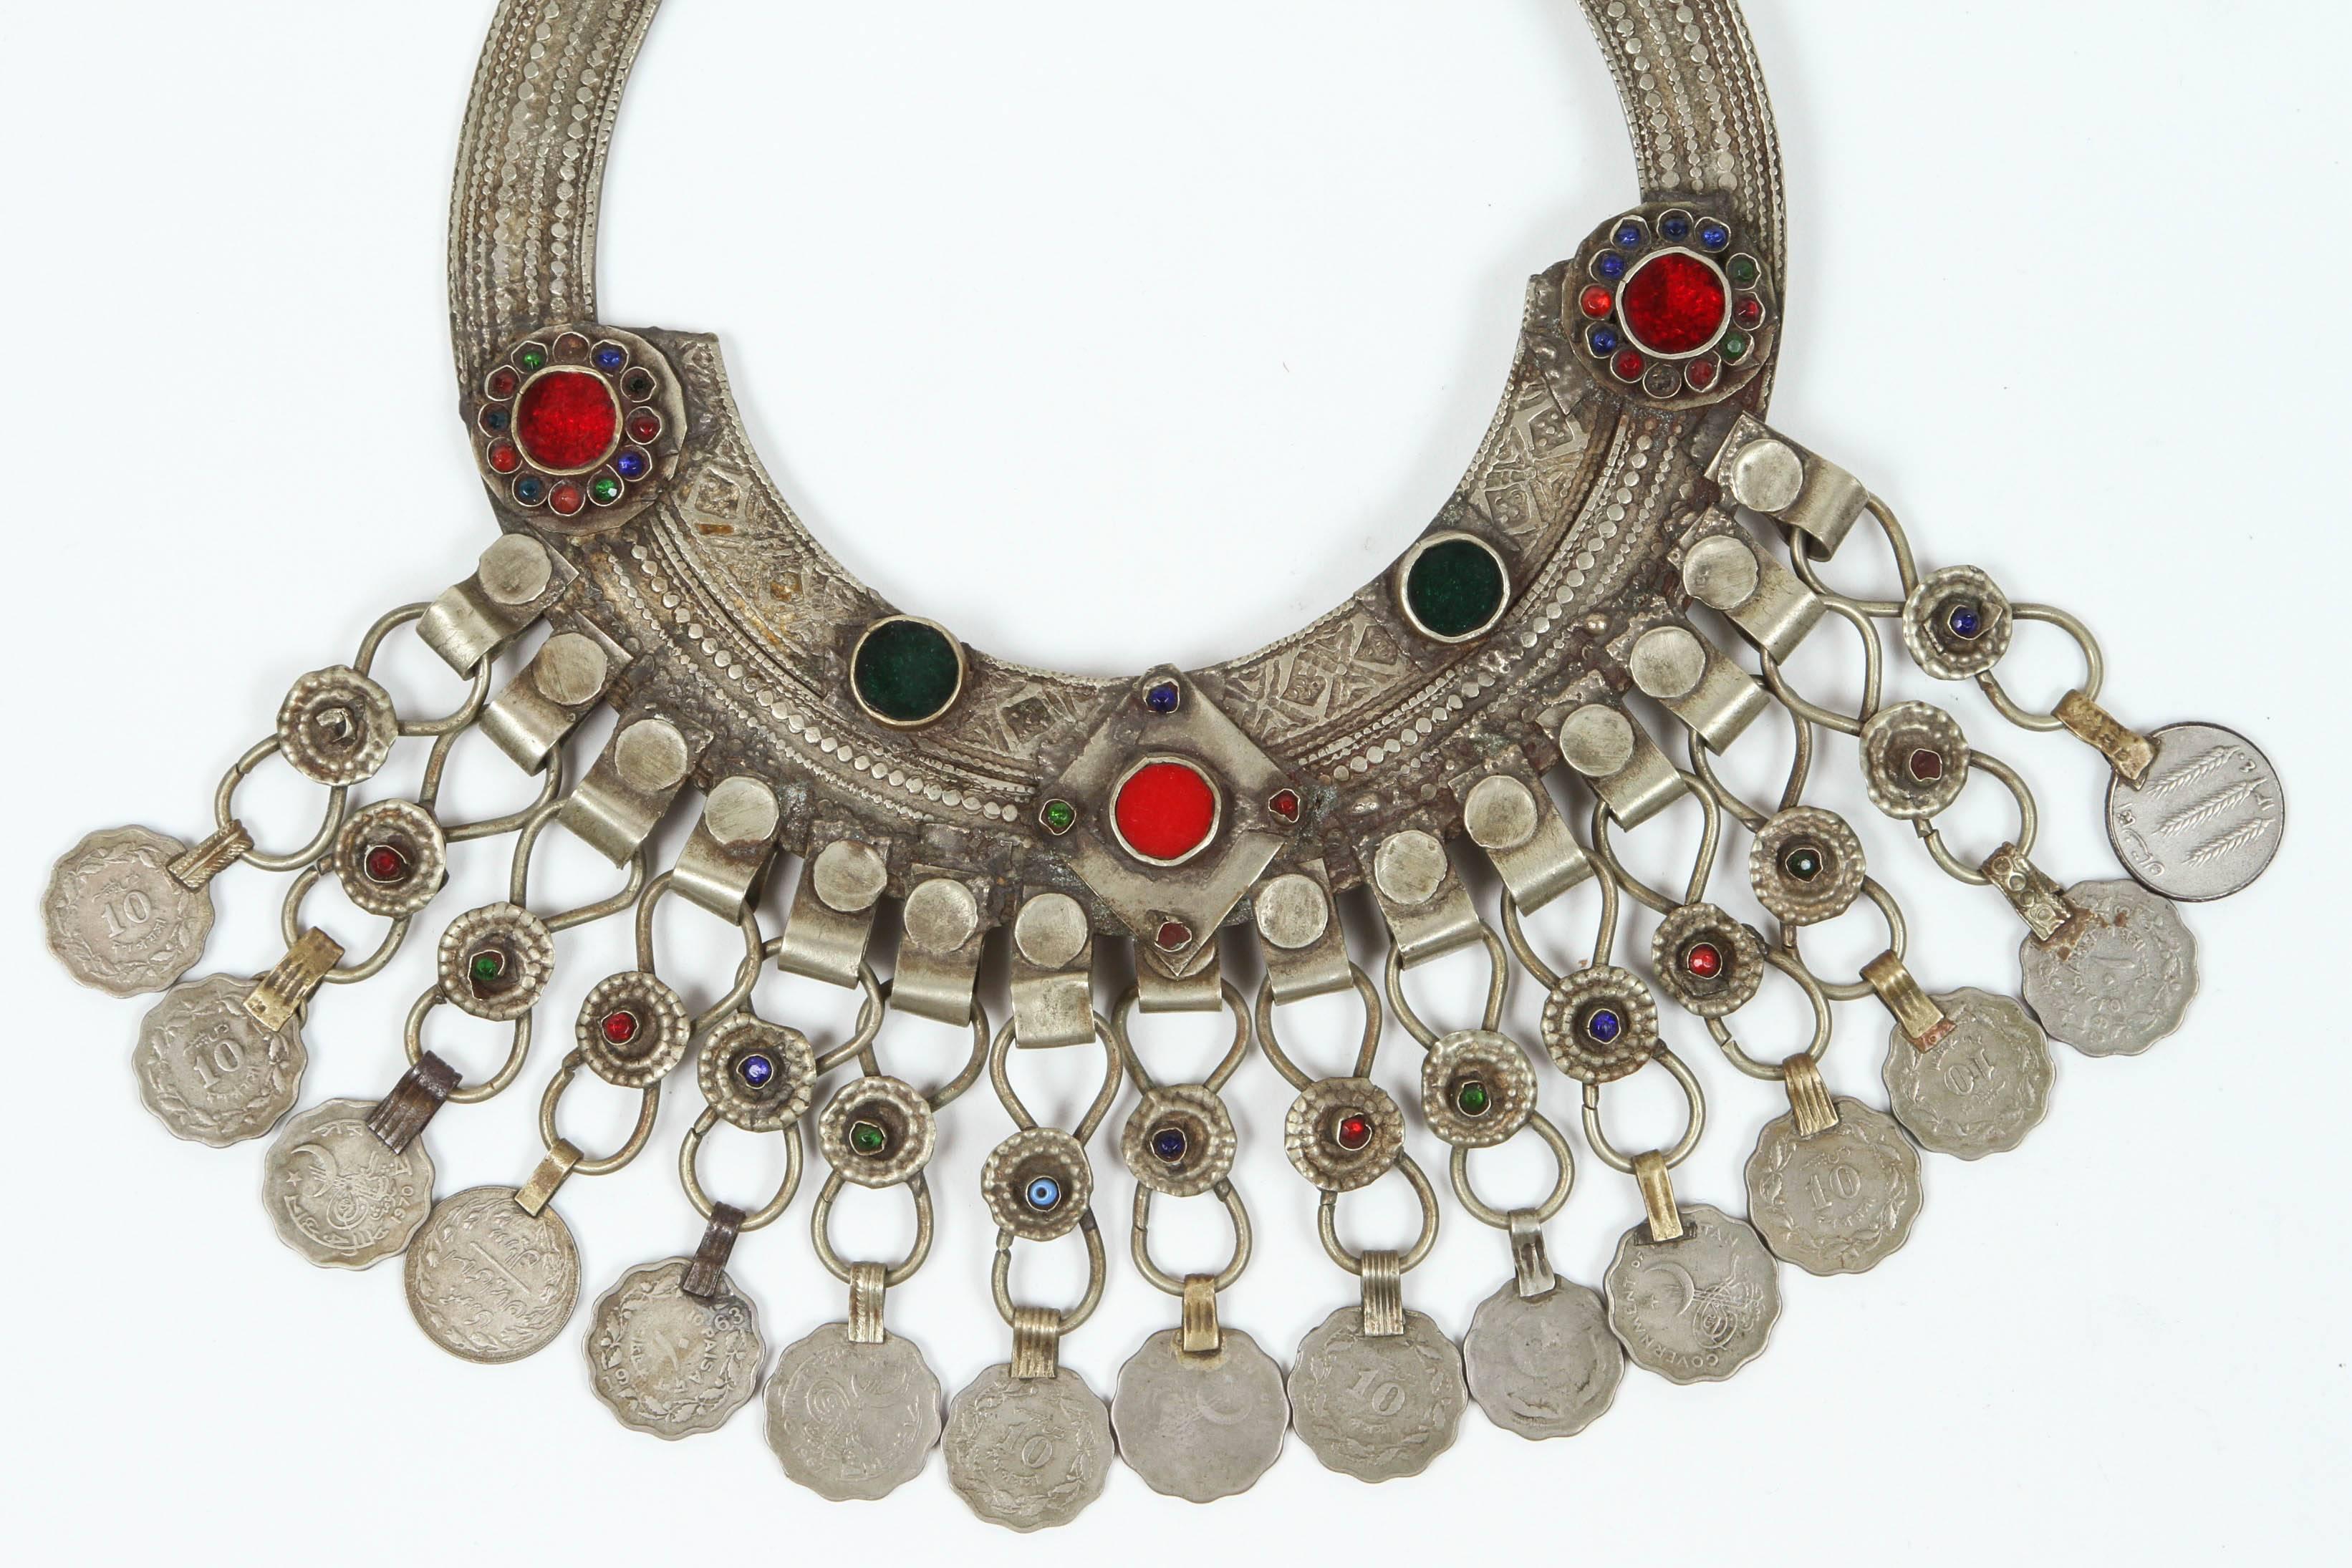 Eine marokkanische Stammes-Schmuck Vintage ein Chocker mit bunten Glasperlen in rot und grün und baumelnden Münzen eingelegt. Silber, aber nicht aus Sterling und reich verziert mit applizierten Silbermotiven und Filigranen. 
Chocker Größe: 10